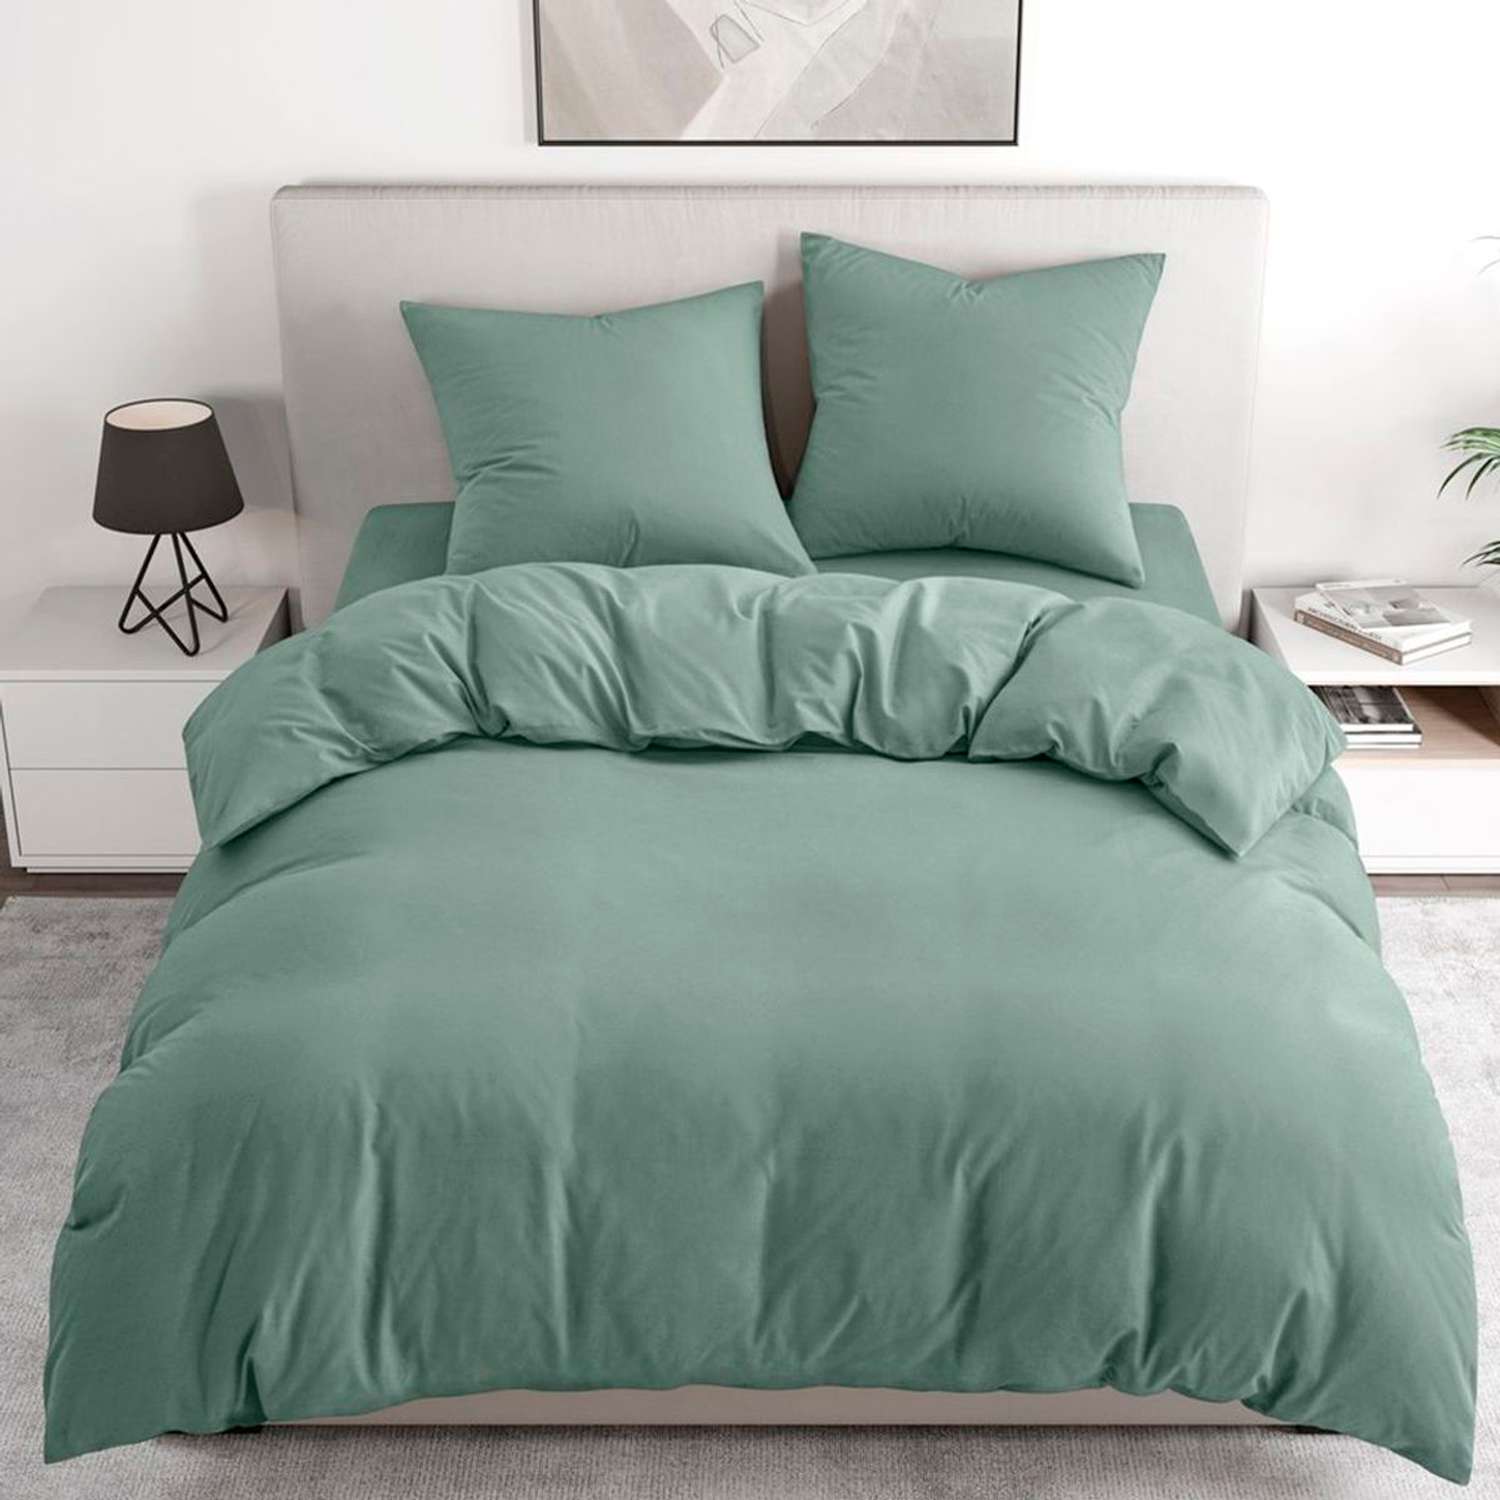 Комплект постельного белья BRAVO 1.5-спальный наволочки 70х70 рис.4549-1 зеленый - фото 1